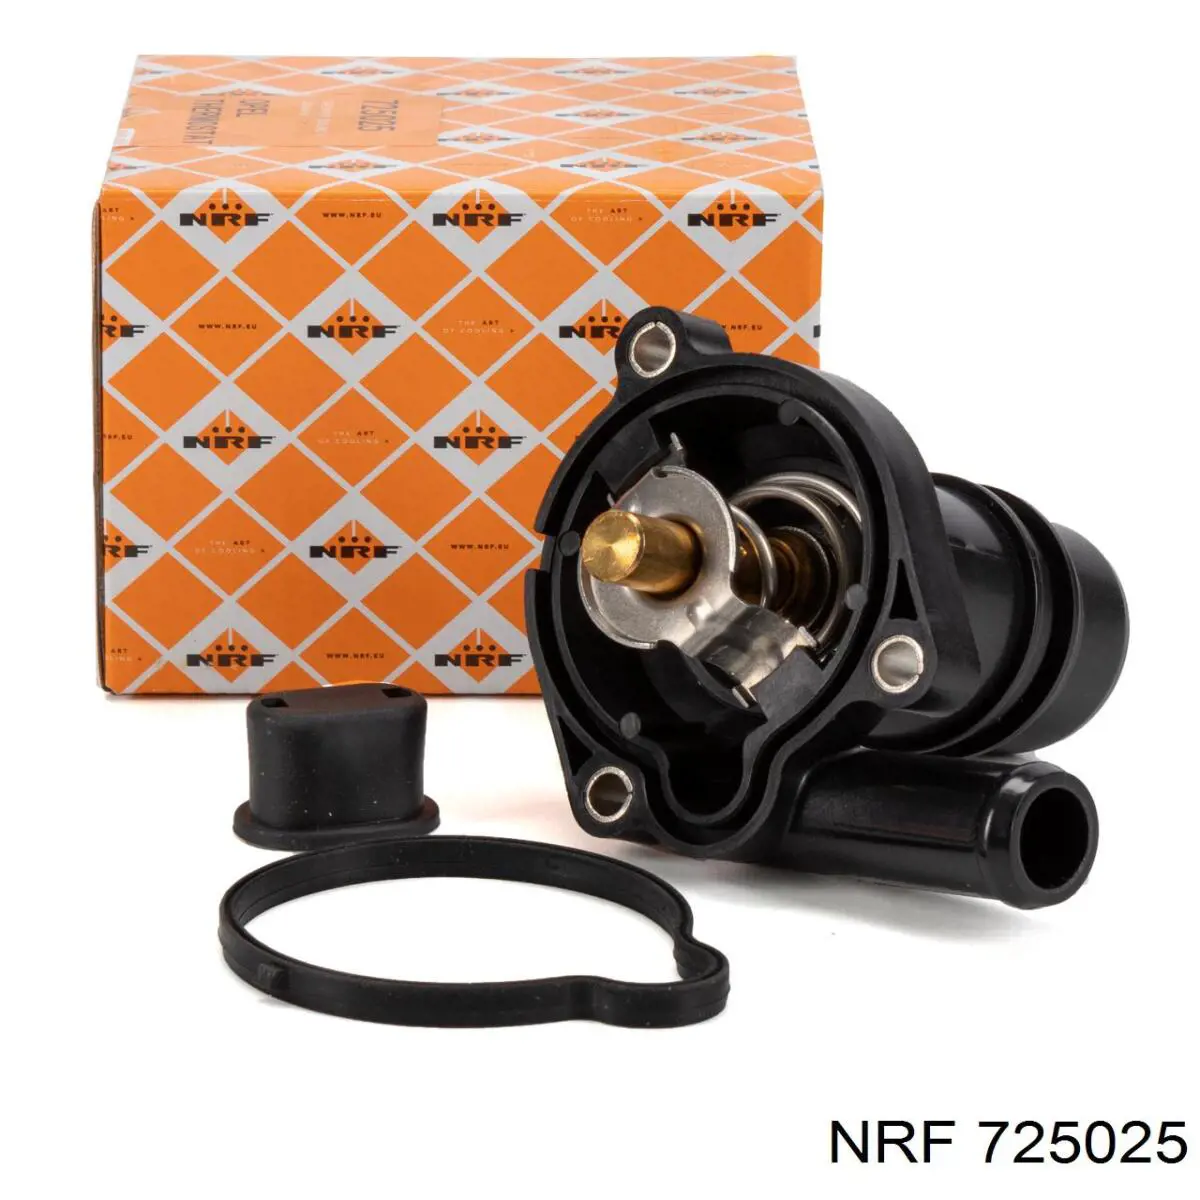 725025 NRF termostato